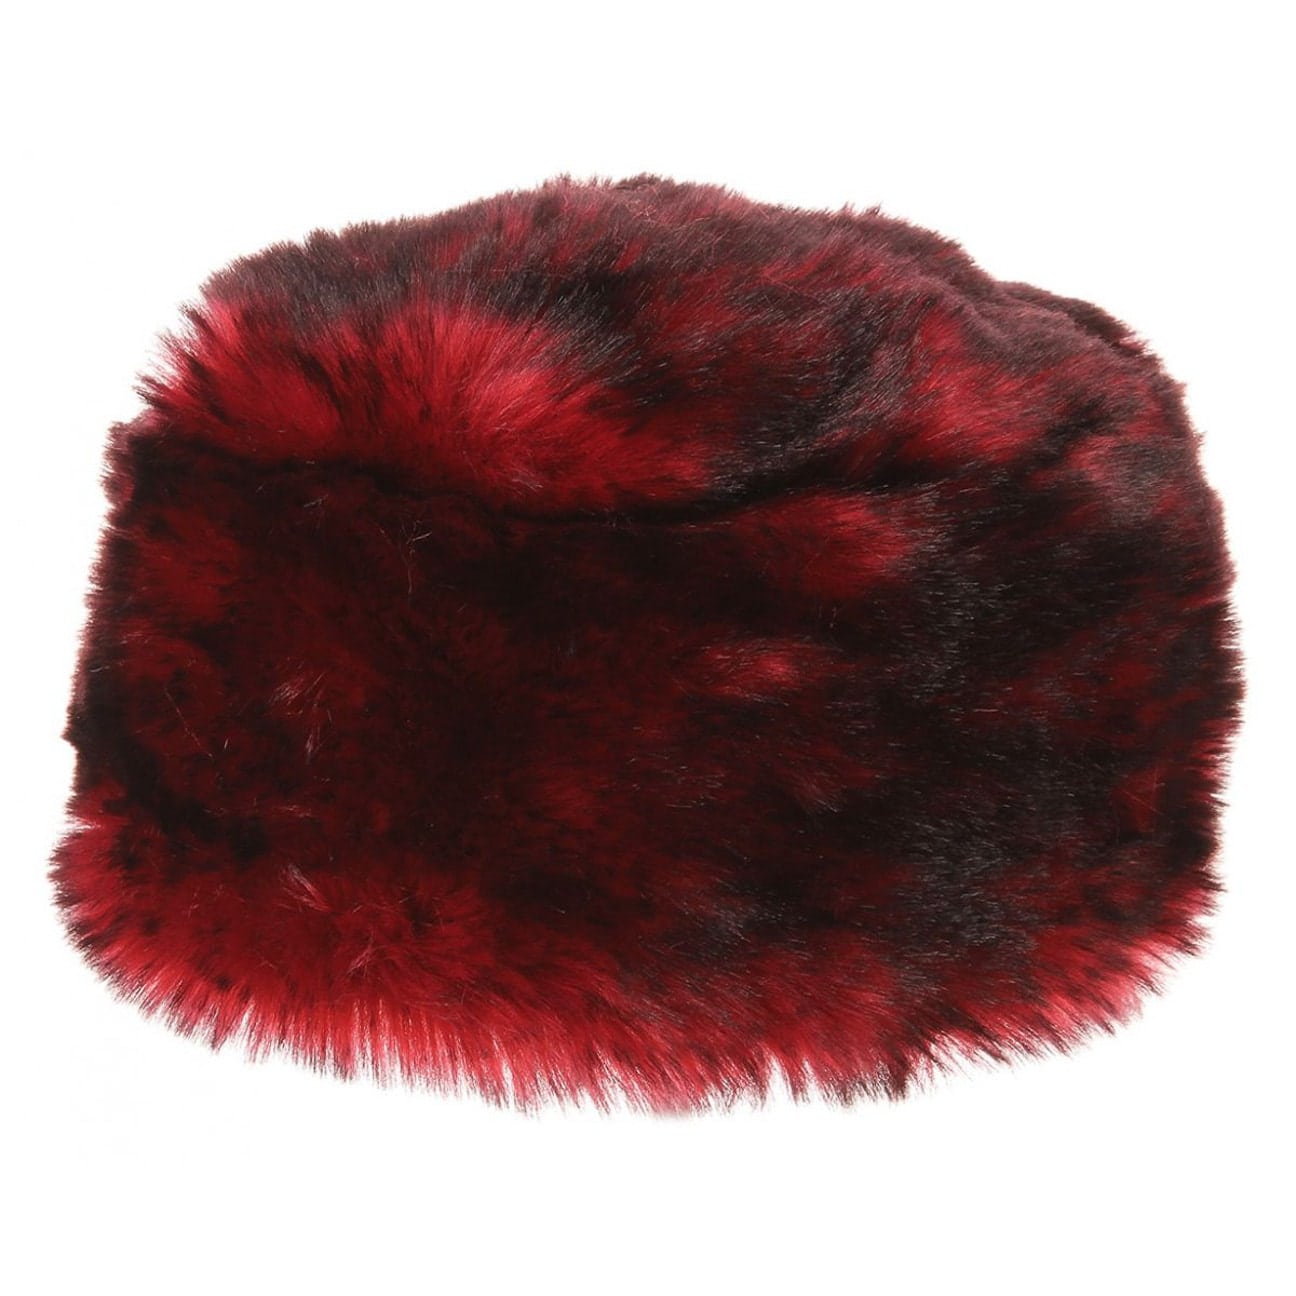 red faux fur hat